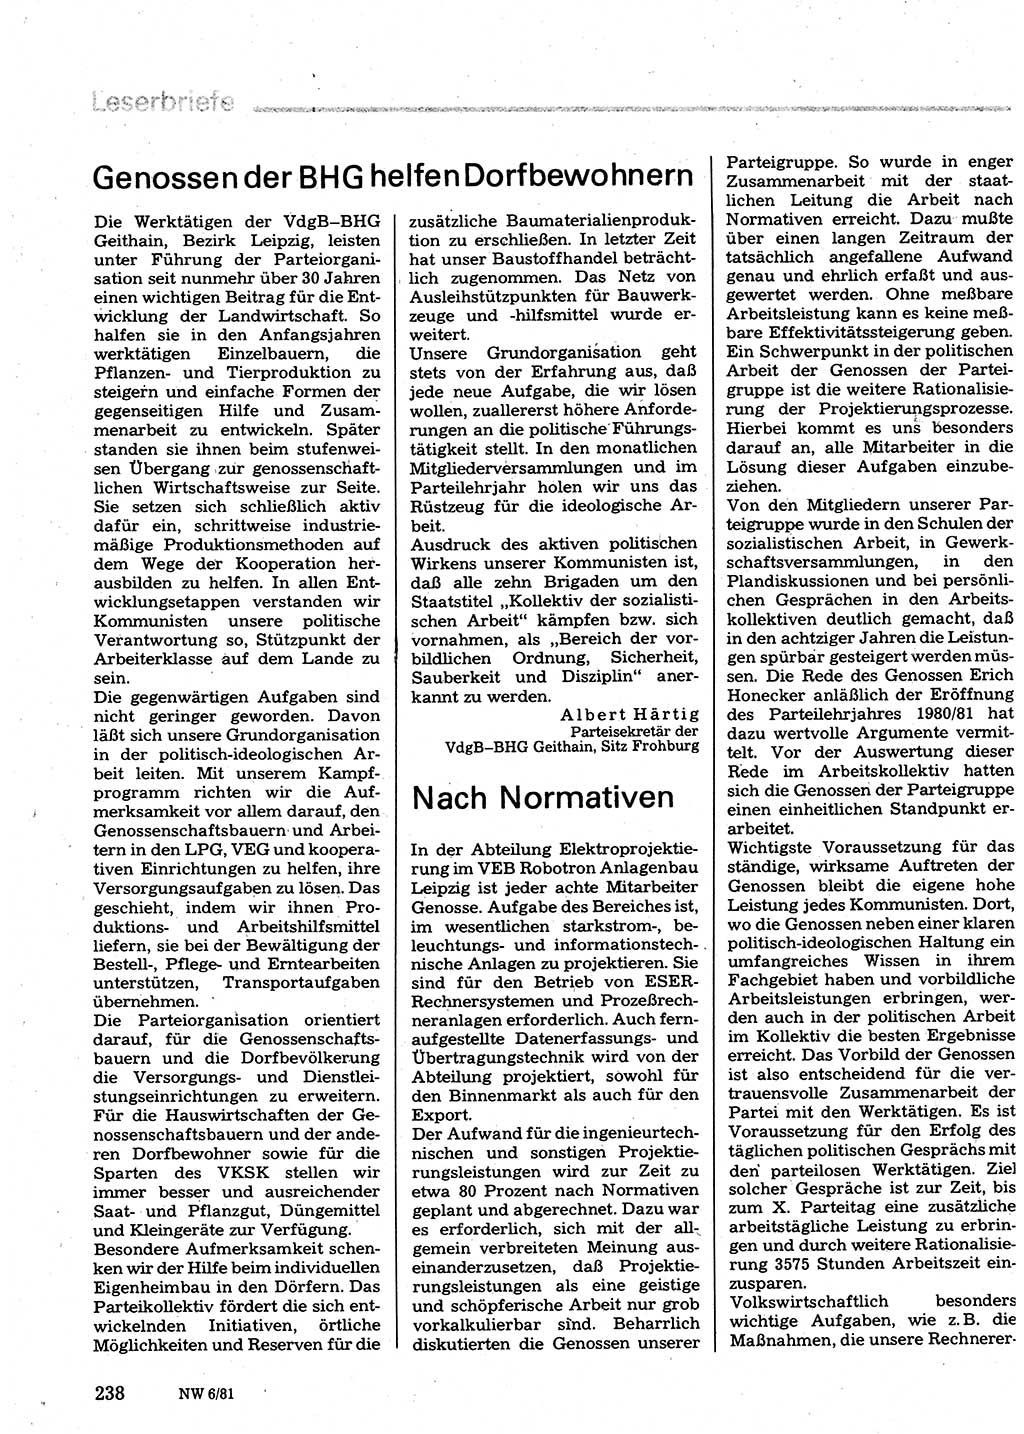 Neuer Weg (NW), Organ des Zentralkomitees (ZK) der SED (Sozialistische Einheitspartei Deutschlands) für Fragen des Parteilebens, 36. Jahrgang [Deutsche Demokratische Republik (DDR)] 1981, Seite 238 (NW ZK SED DDR 1981, S. 238)